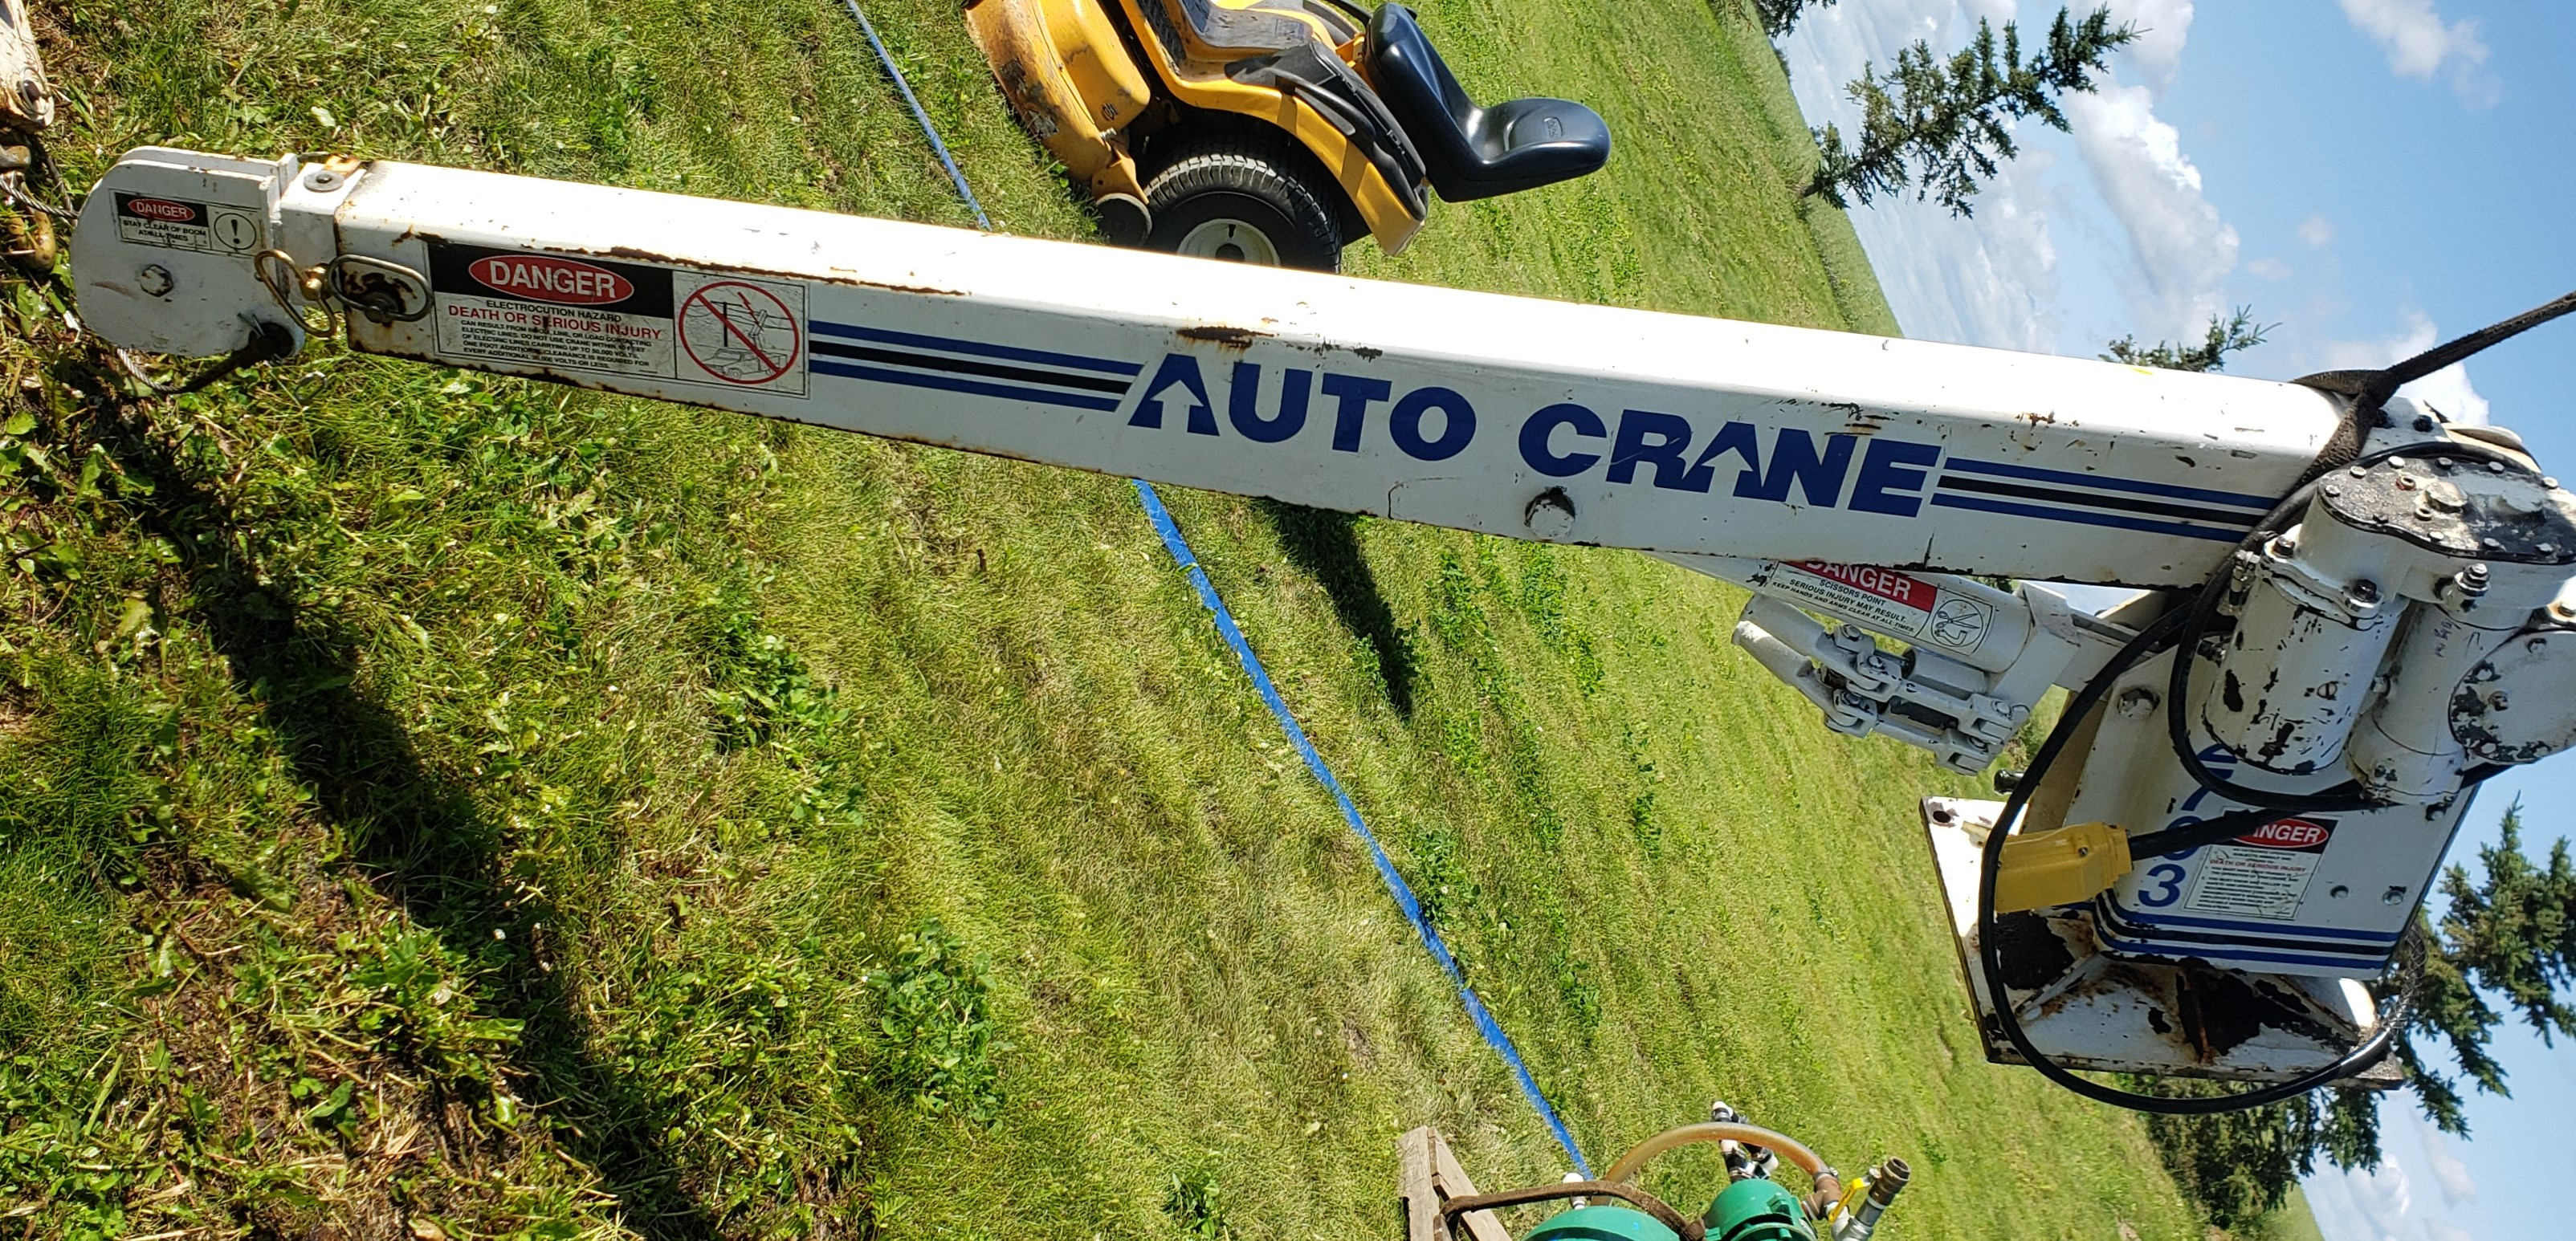 Auto Crane